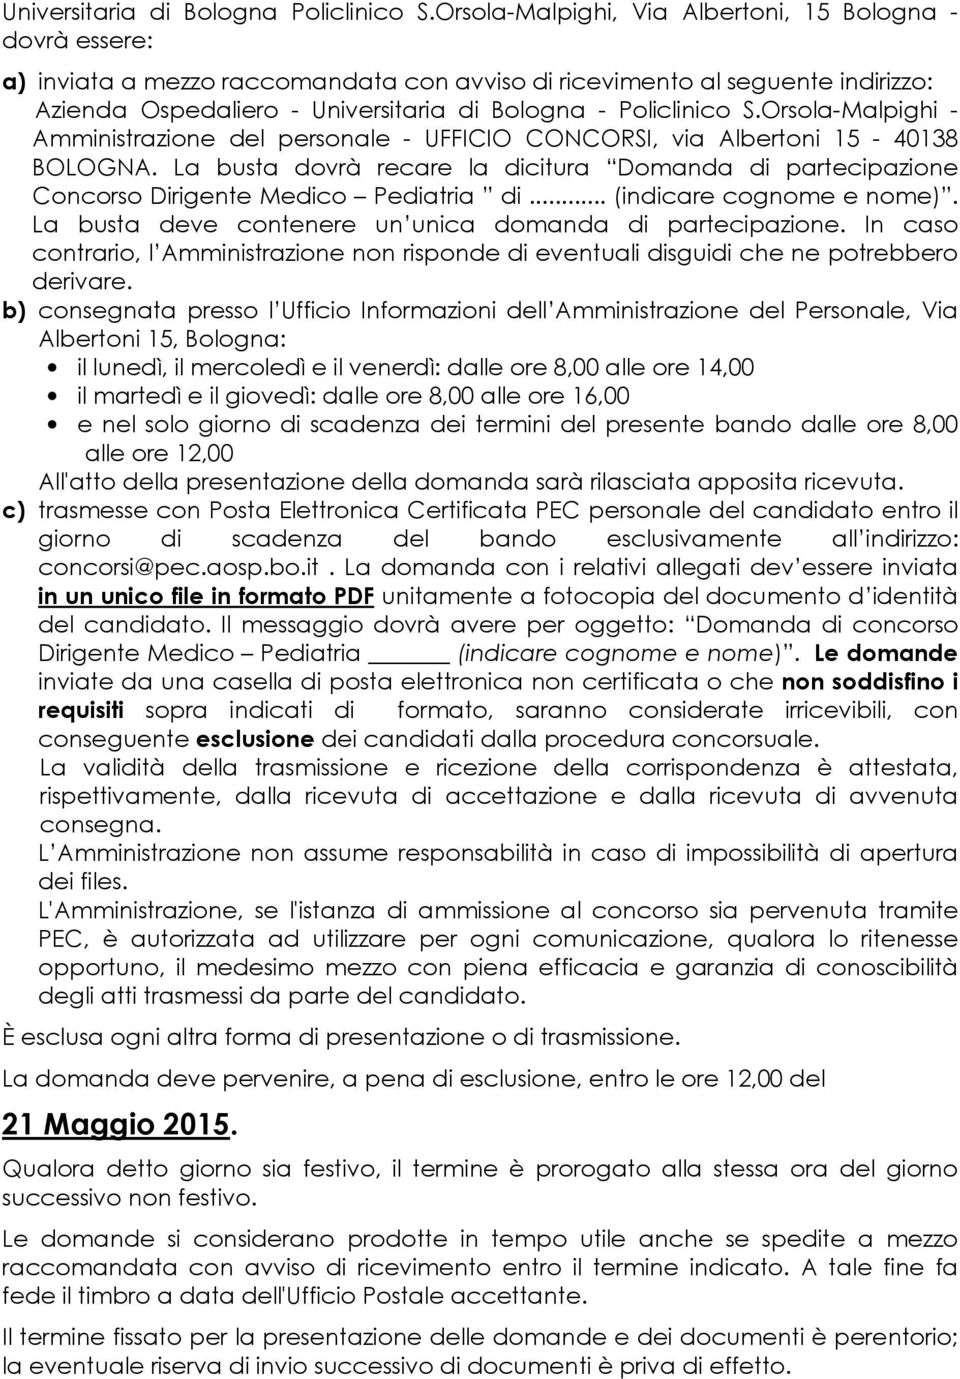 Policlinico S.Orsola-Malpighi - Amministrazione del personale - UFFICIO CONCORSI, via Albertoni 15-40138 BOLOGNA.